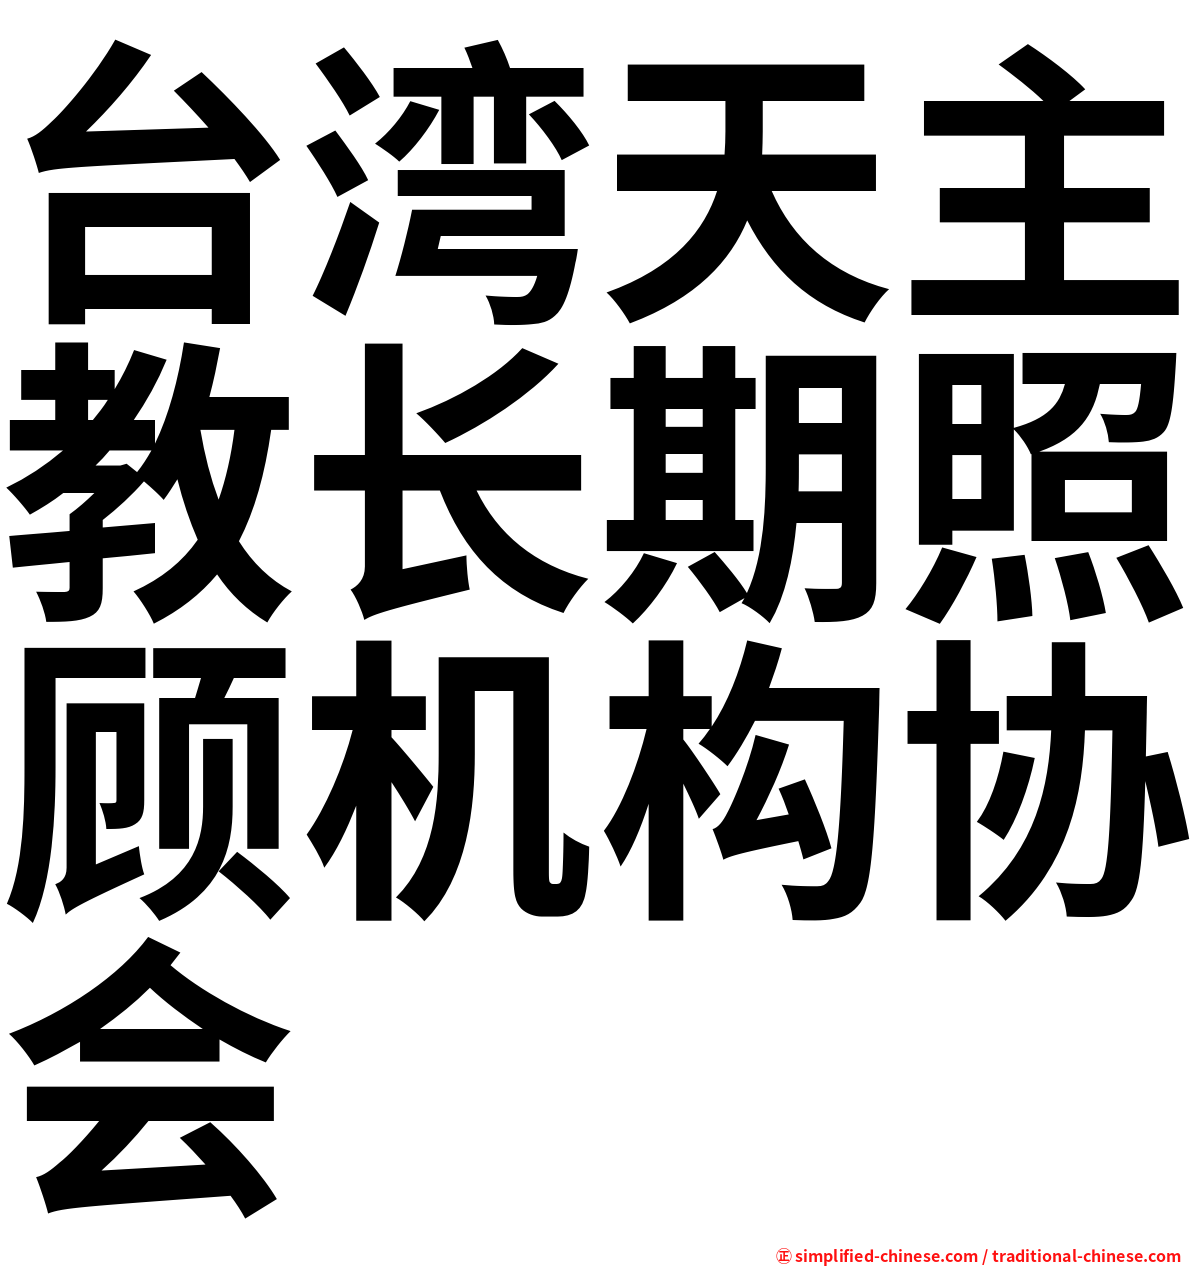 台湾天主教长期照顾机构协会